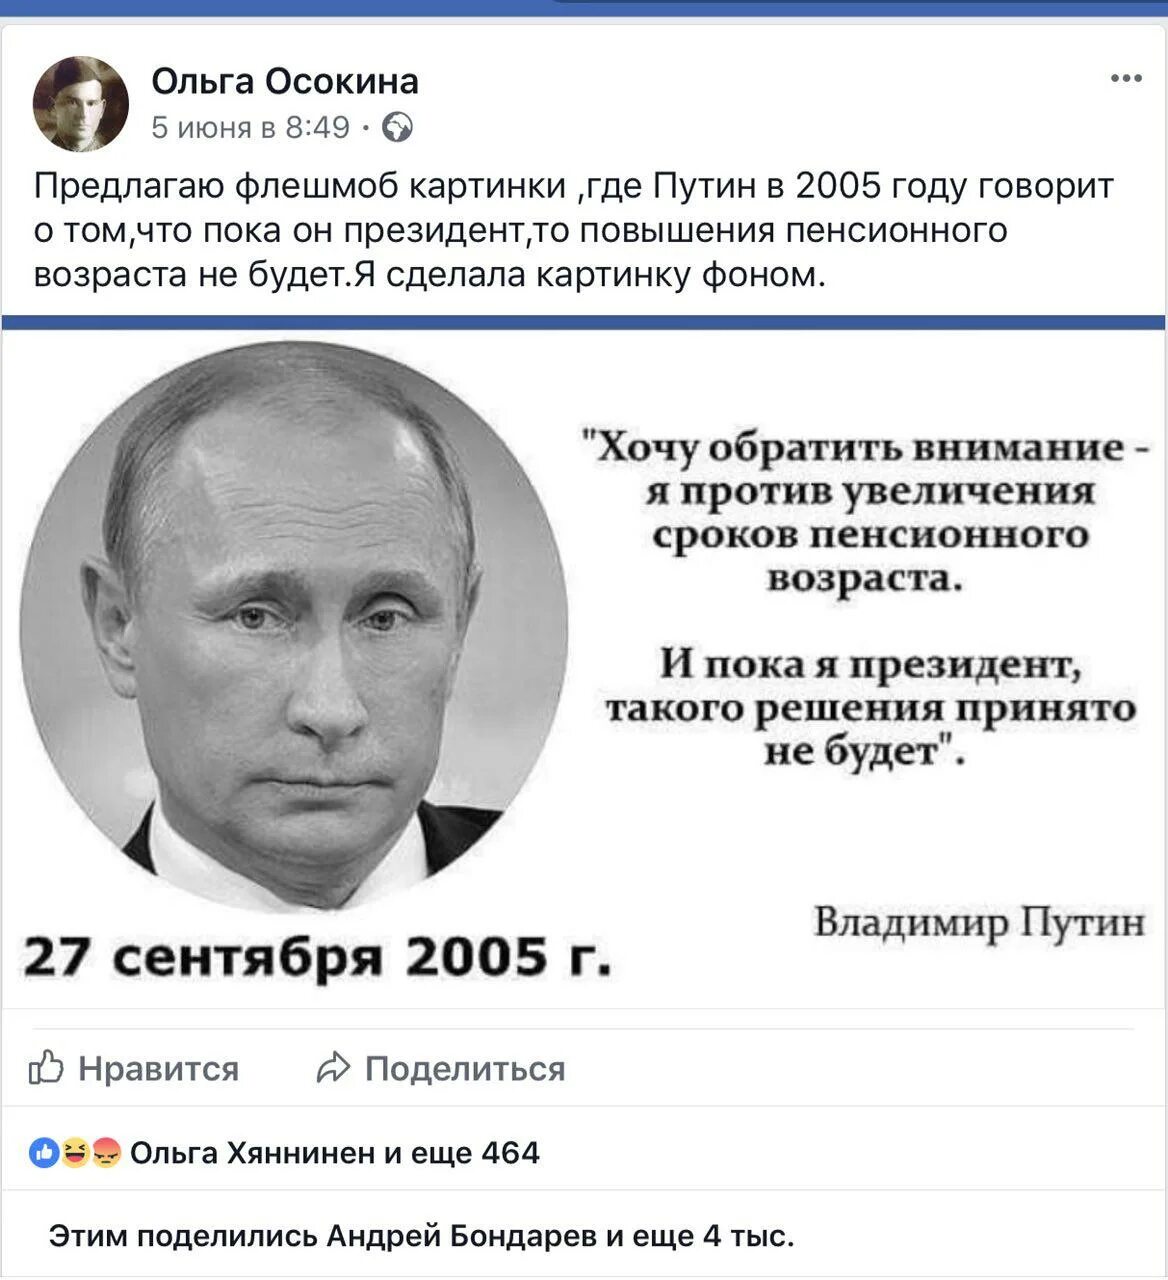 В 2005 году словами. Картинки с изображением Путина.